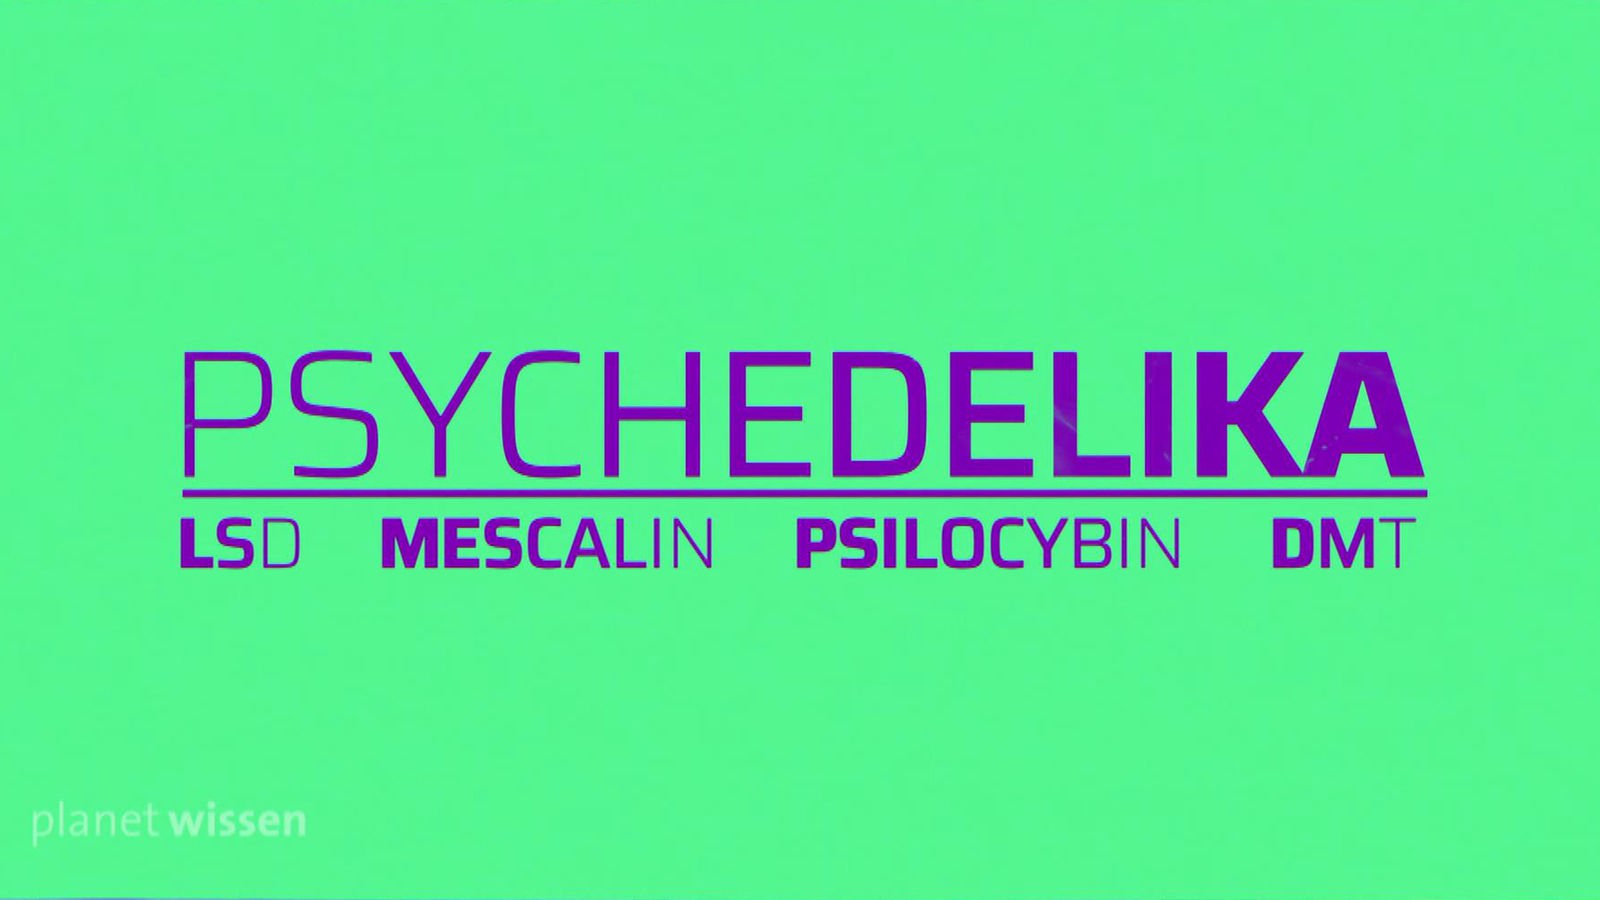 Grüne Tafel auf der in lila 'Psychedelika' staht. Darunter steht in kleinerer Schrift 'LSD', 'Mescalin', 'Psilocybin' und 'DMT'.